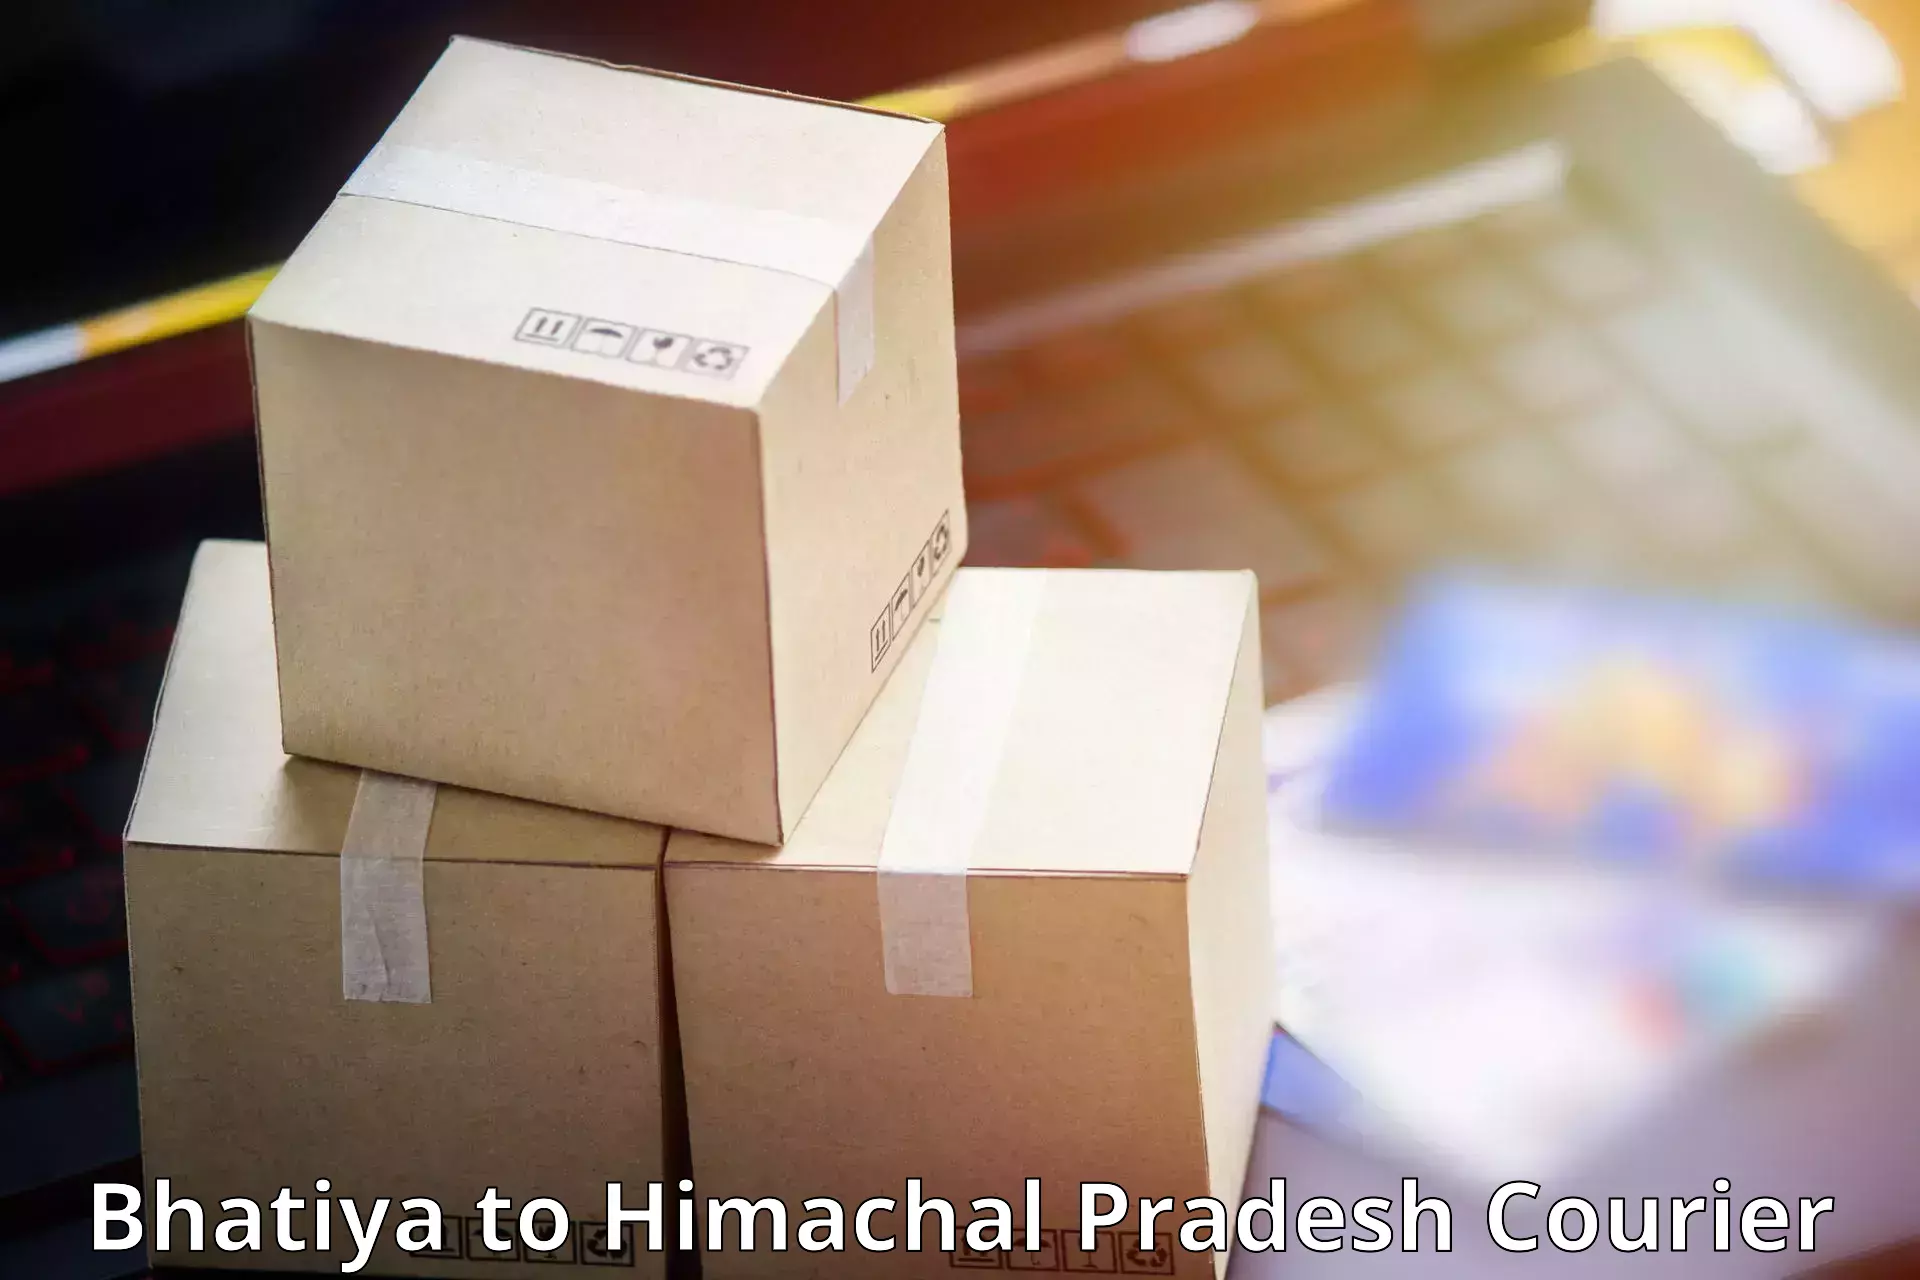 Courier service efficiency in Bhatiya to Nurpur